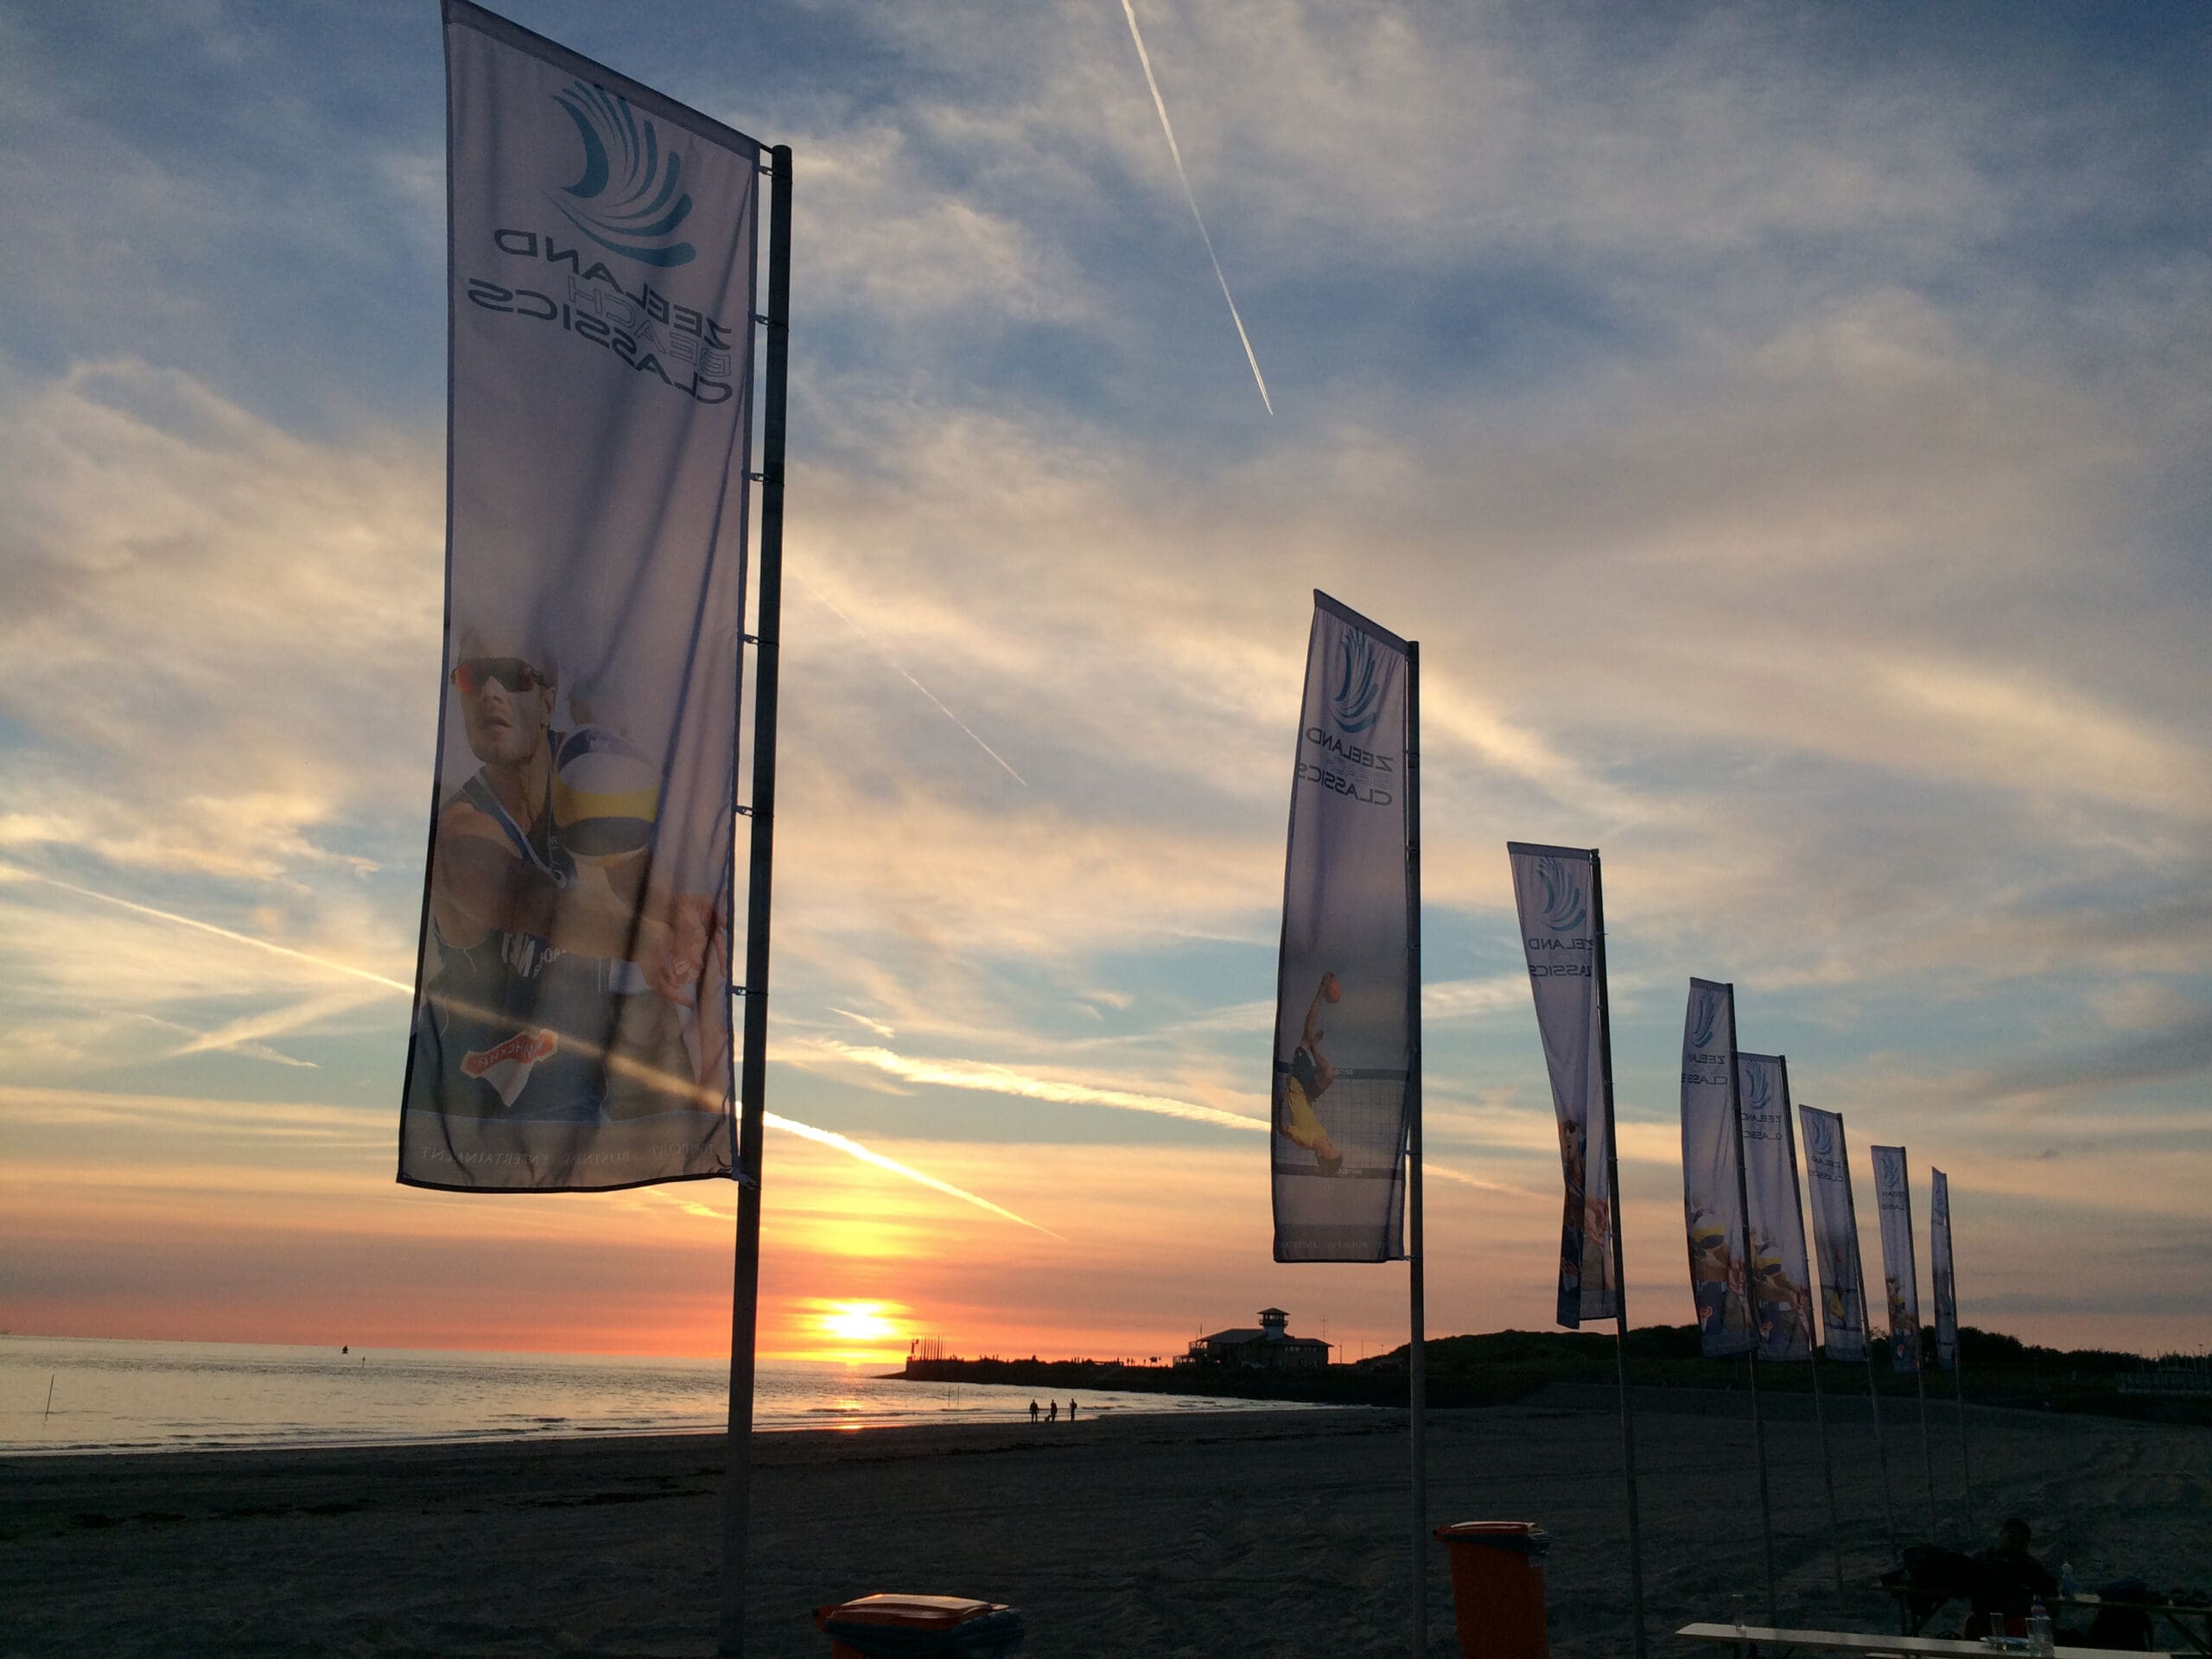 Baniervlaggen voor Zeeland Beach Classics in Vlissingen